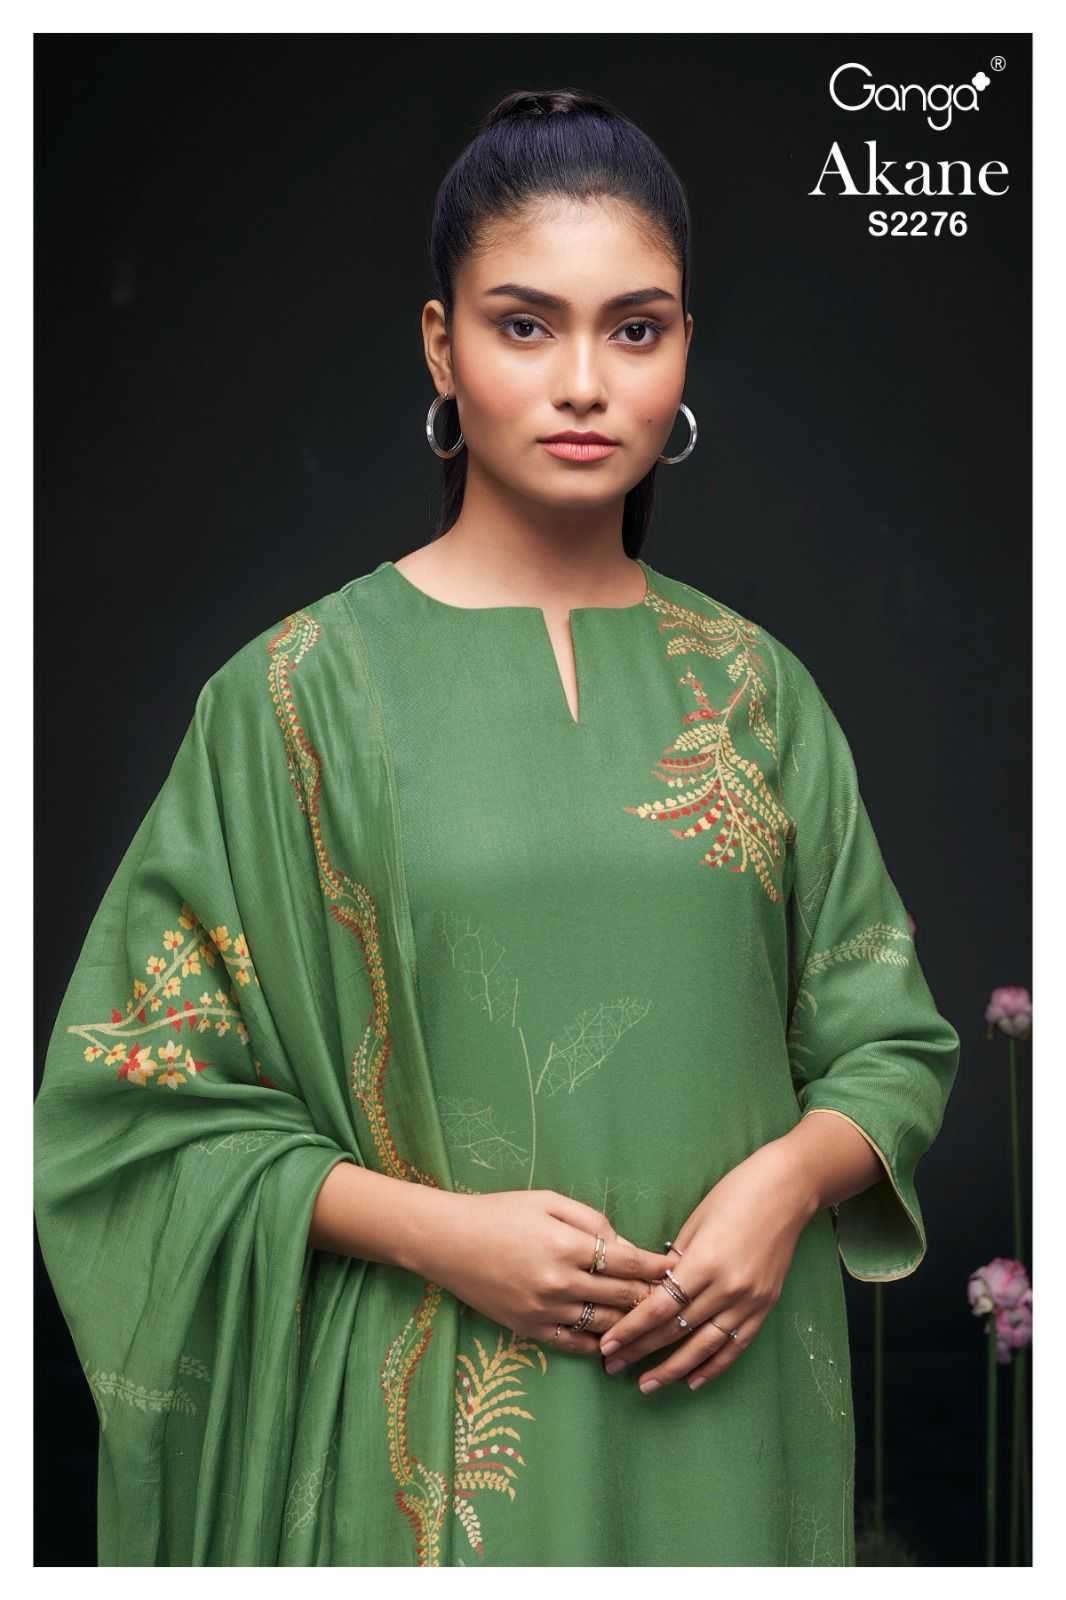 Ganga akane 2276 wool Pashmina suit 